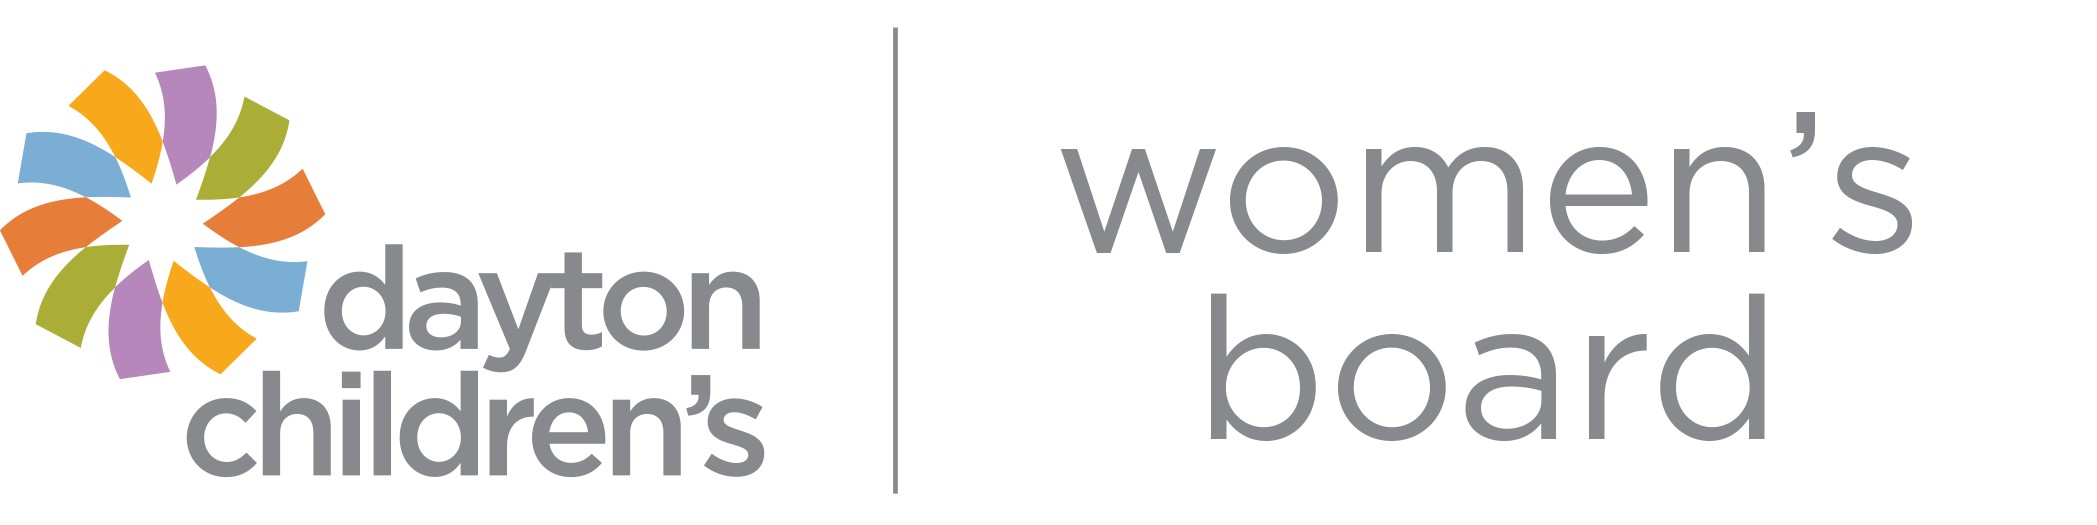 women's board logo